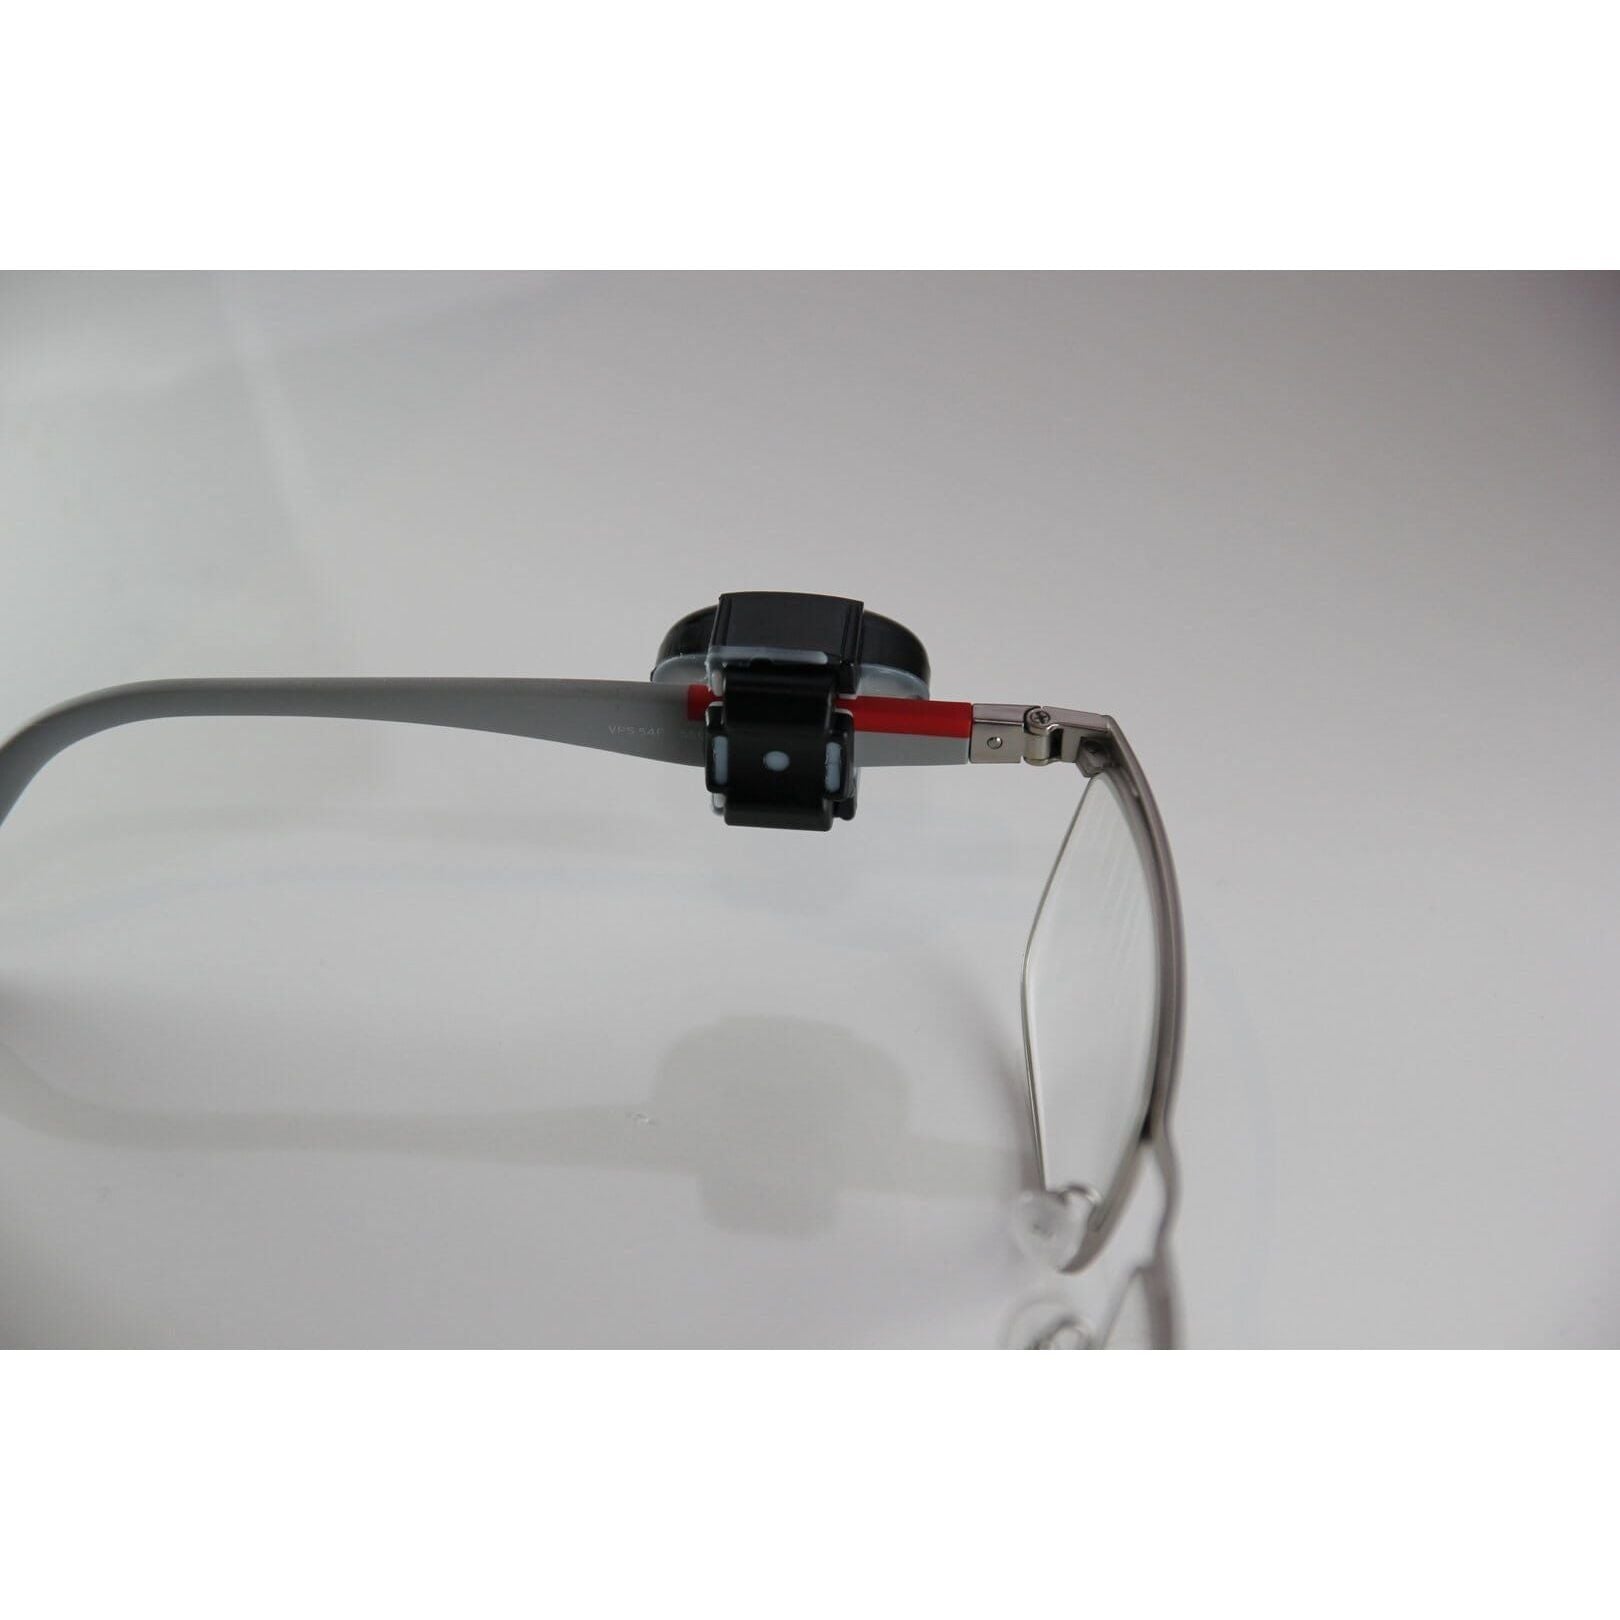 Brillensicherung RF schwarz für Bügel bis 12mm - EastekOnlineshop